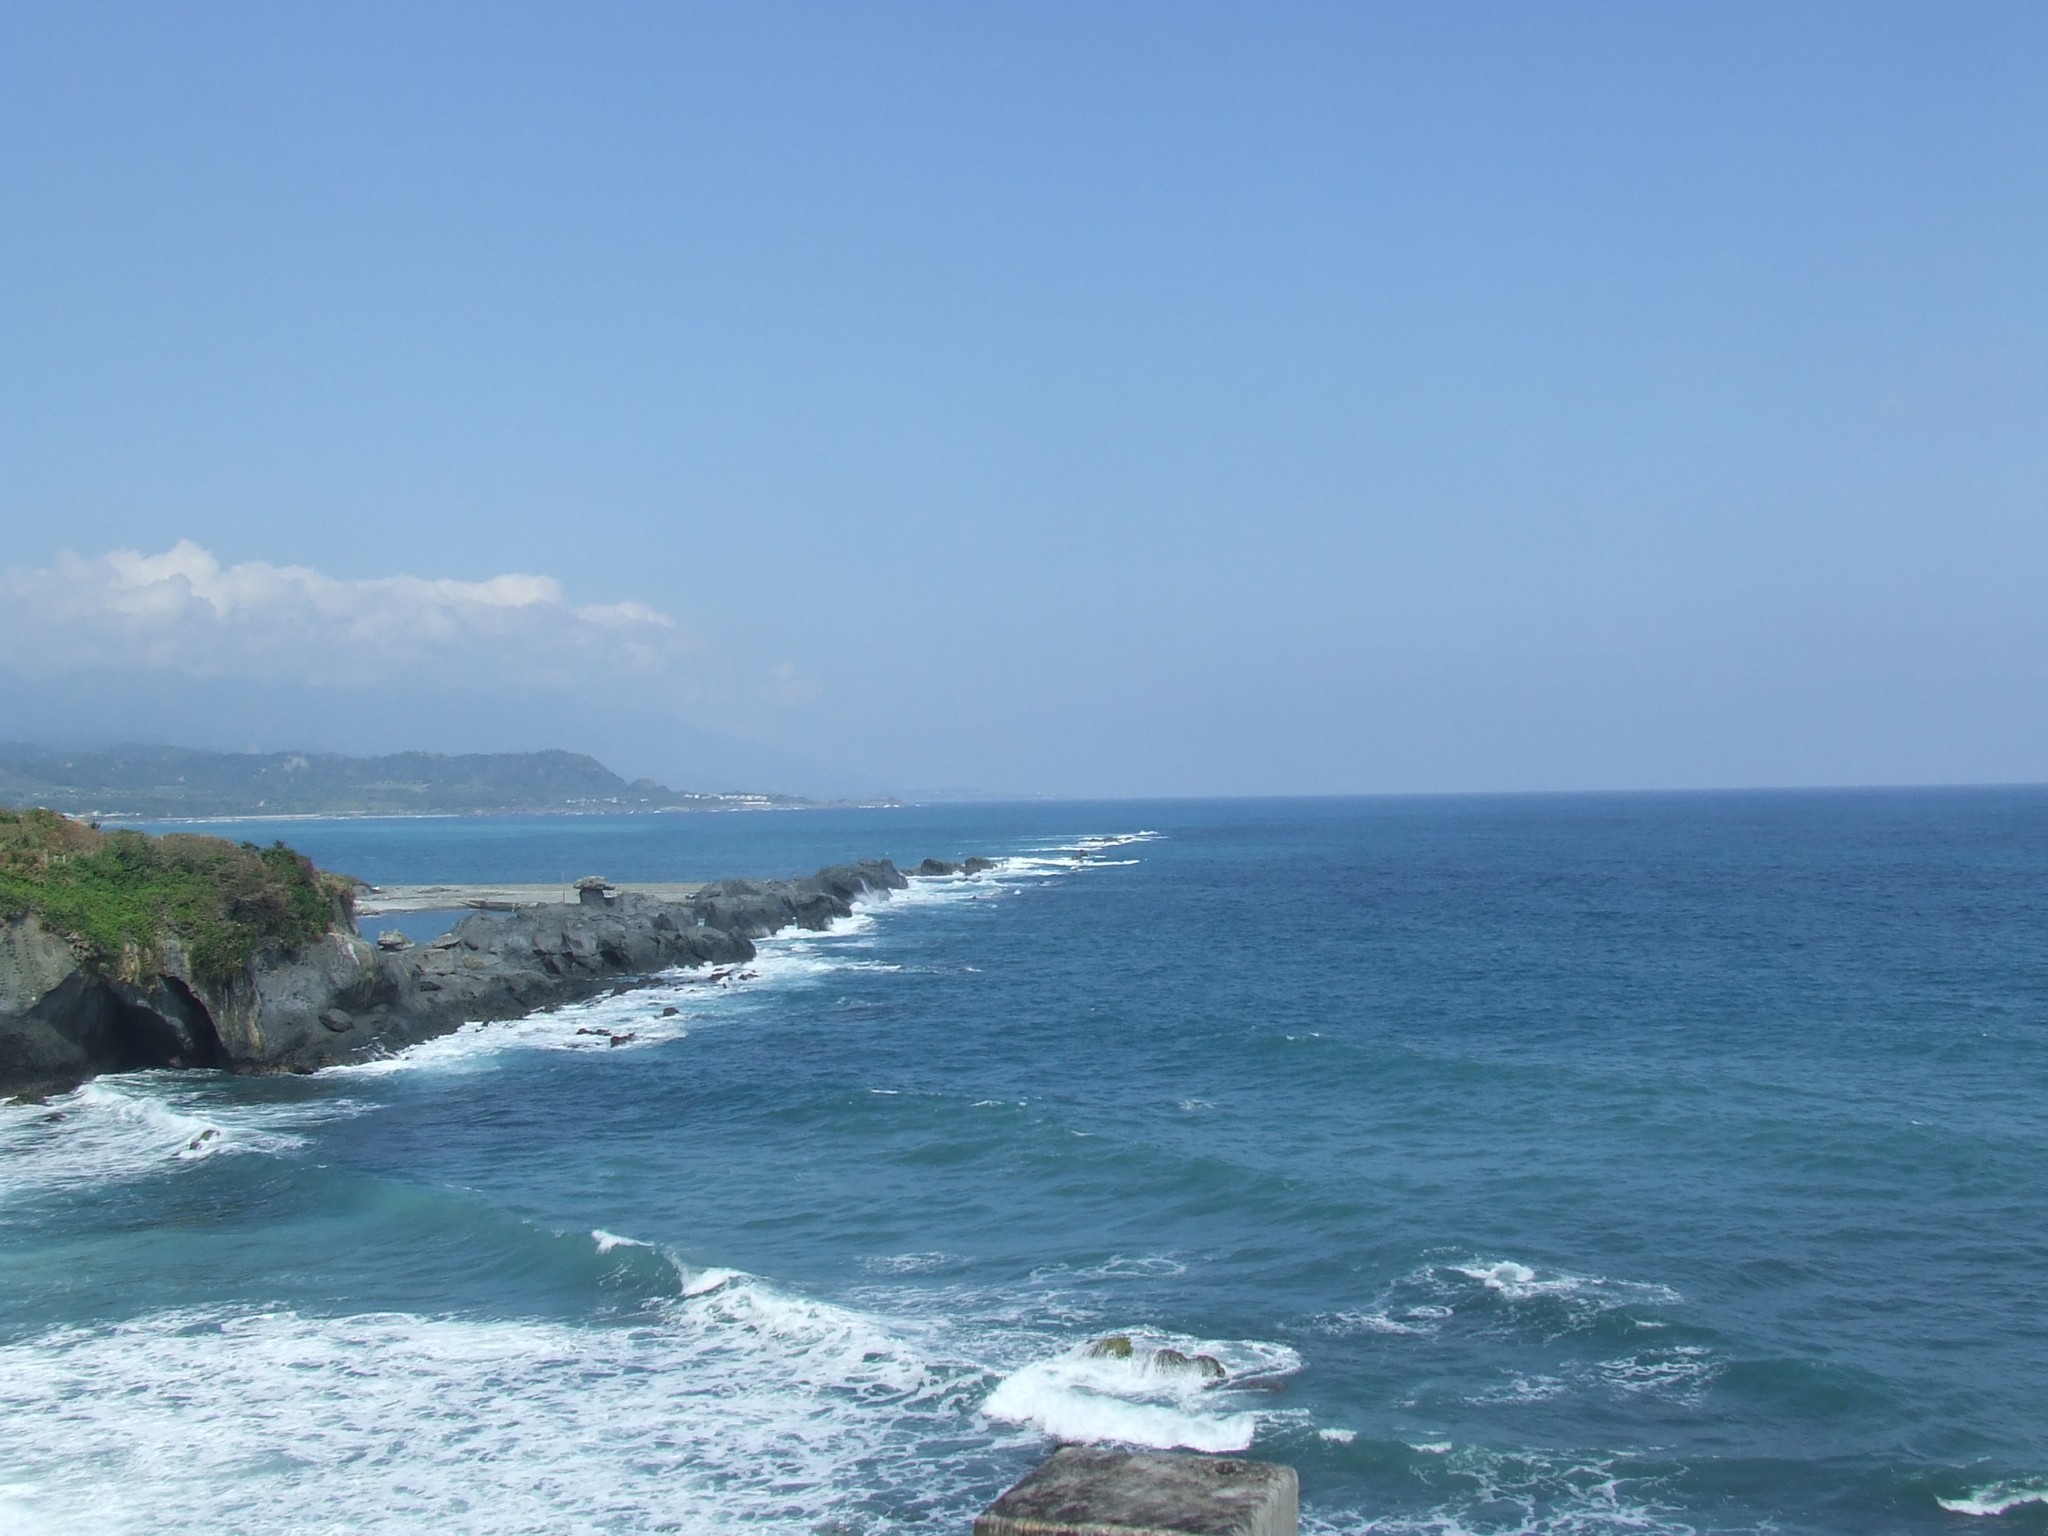 想选半天时间沿台湾东海岸骑行,看海景,哪段海岸比较适合?